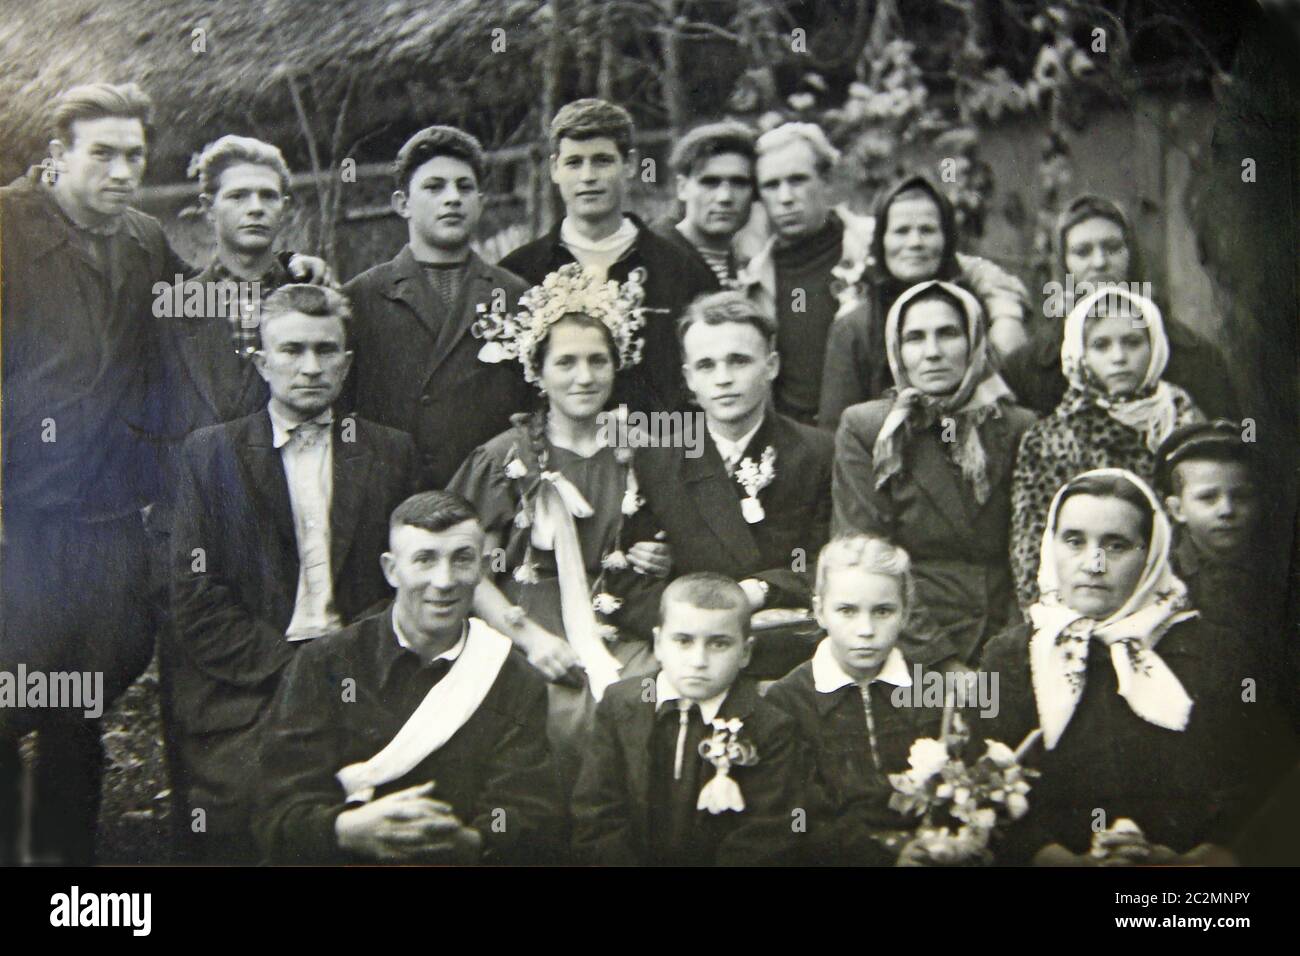 Vintage-Foto von Gruppe von Menschen auf Hochzeit. Schwarz-weiß alte Fotografie von Jungvermählten mit Peopl Stockfoto